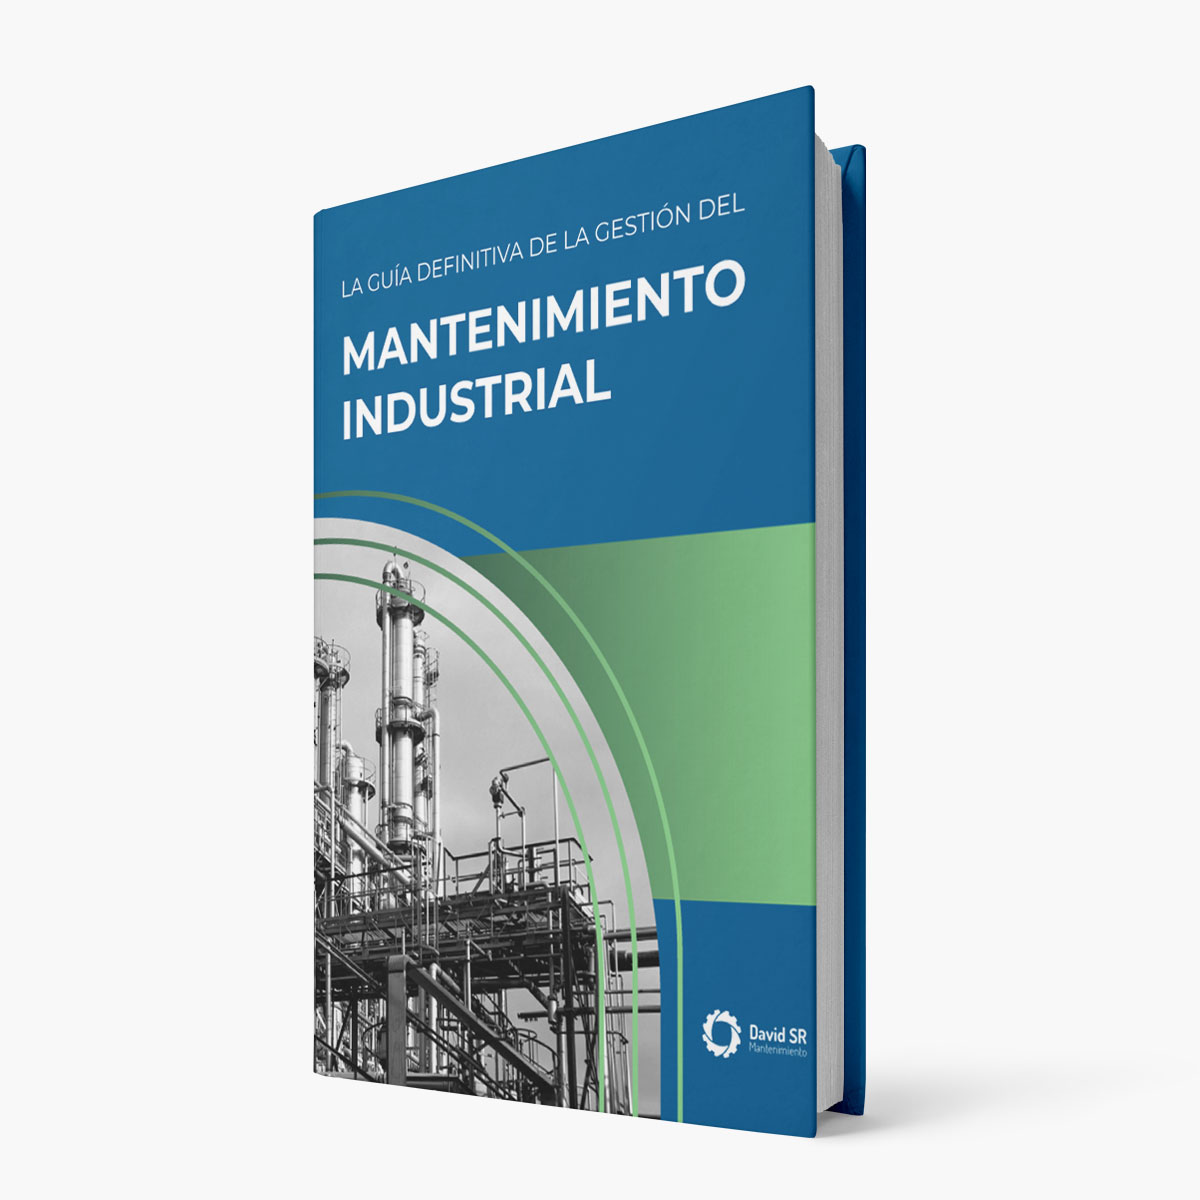 La guía definitiva de la gestión del mantenimiento industrial